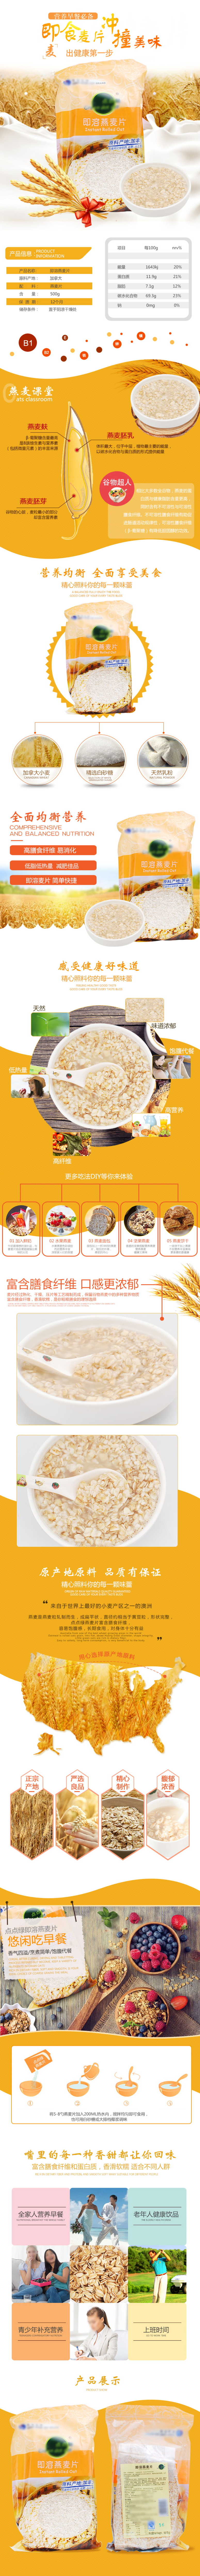 燕麦麦片小麦五谷粮食食品淘宝详情页